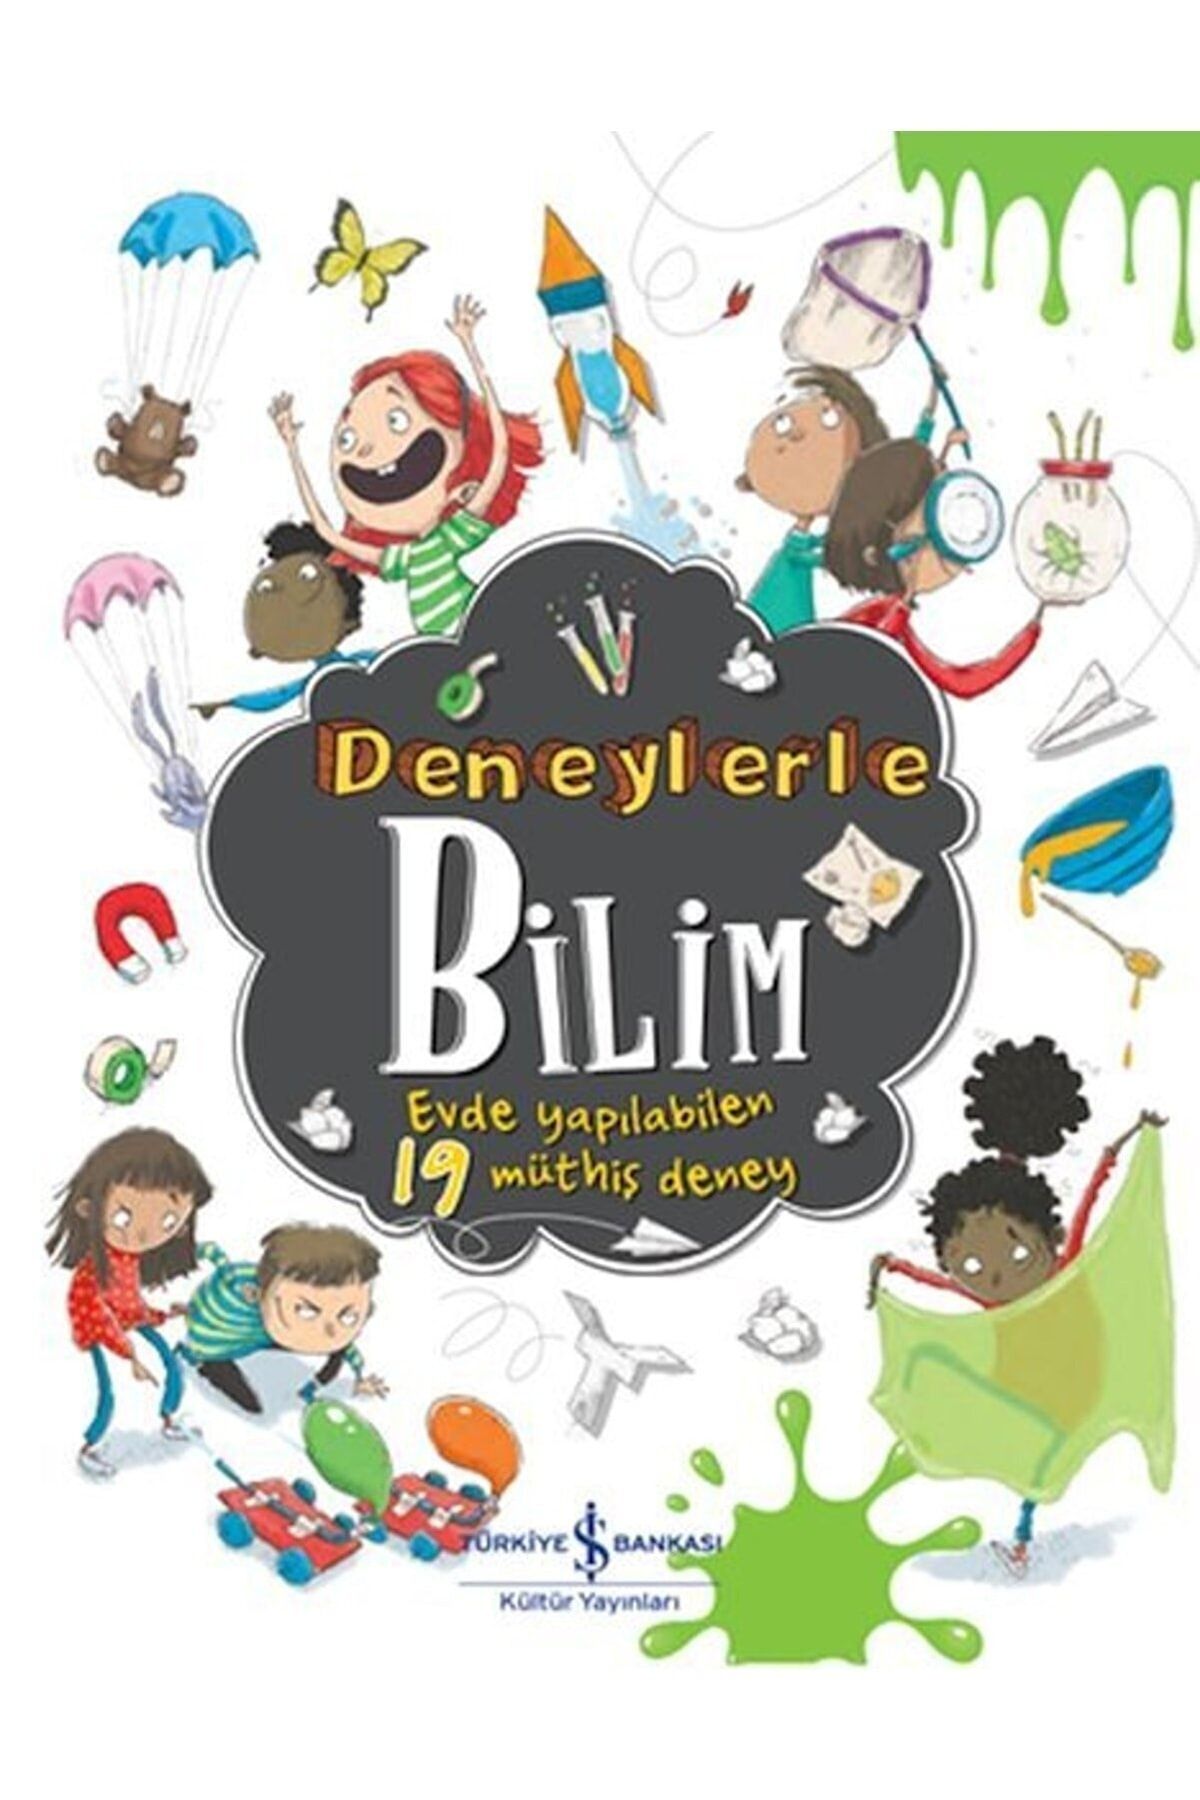 Türkiye İş Bankası Kültür Yayınları Deneylerle Bilim - Evde Yapılabilen 19 Müthiş Deney